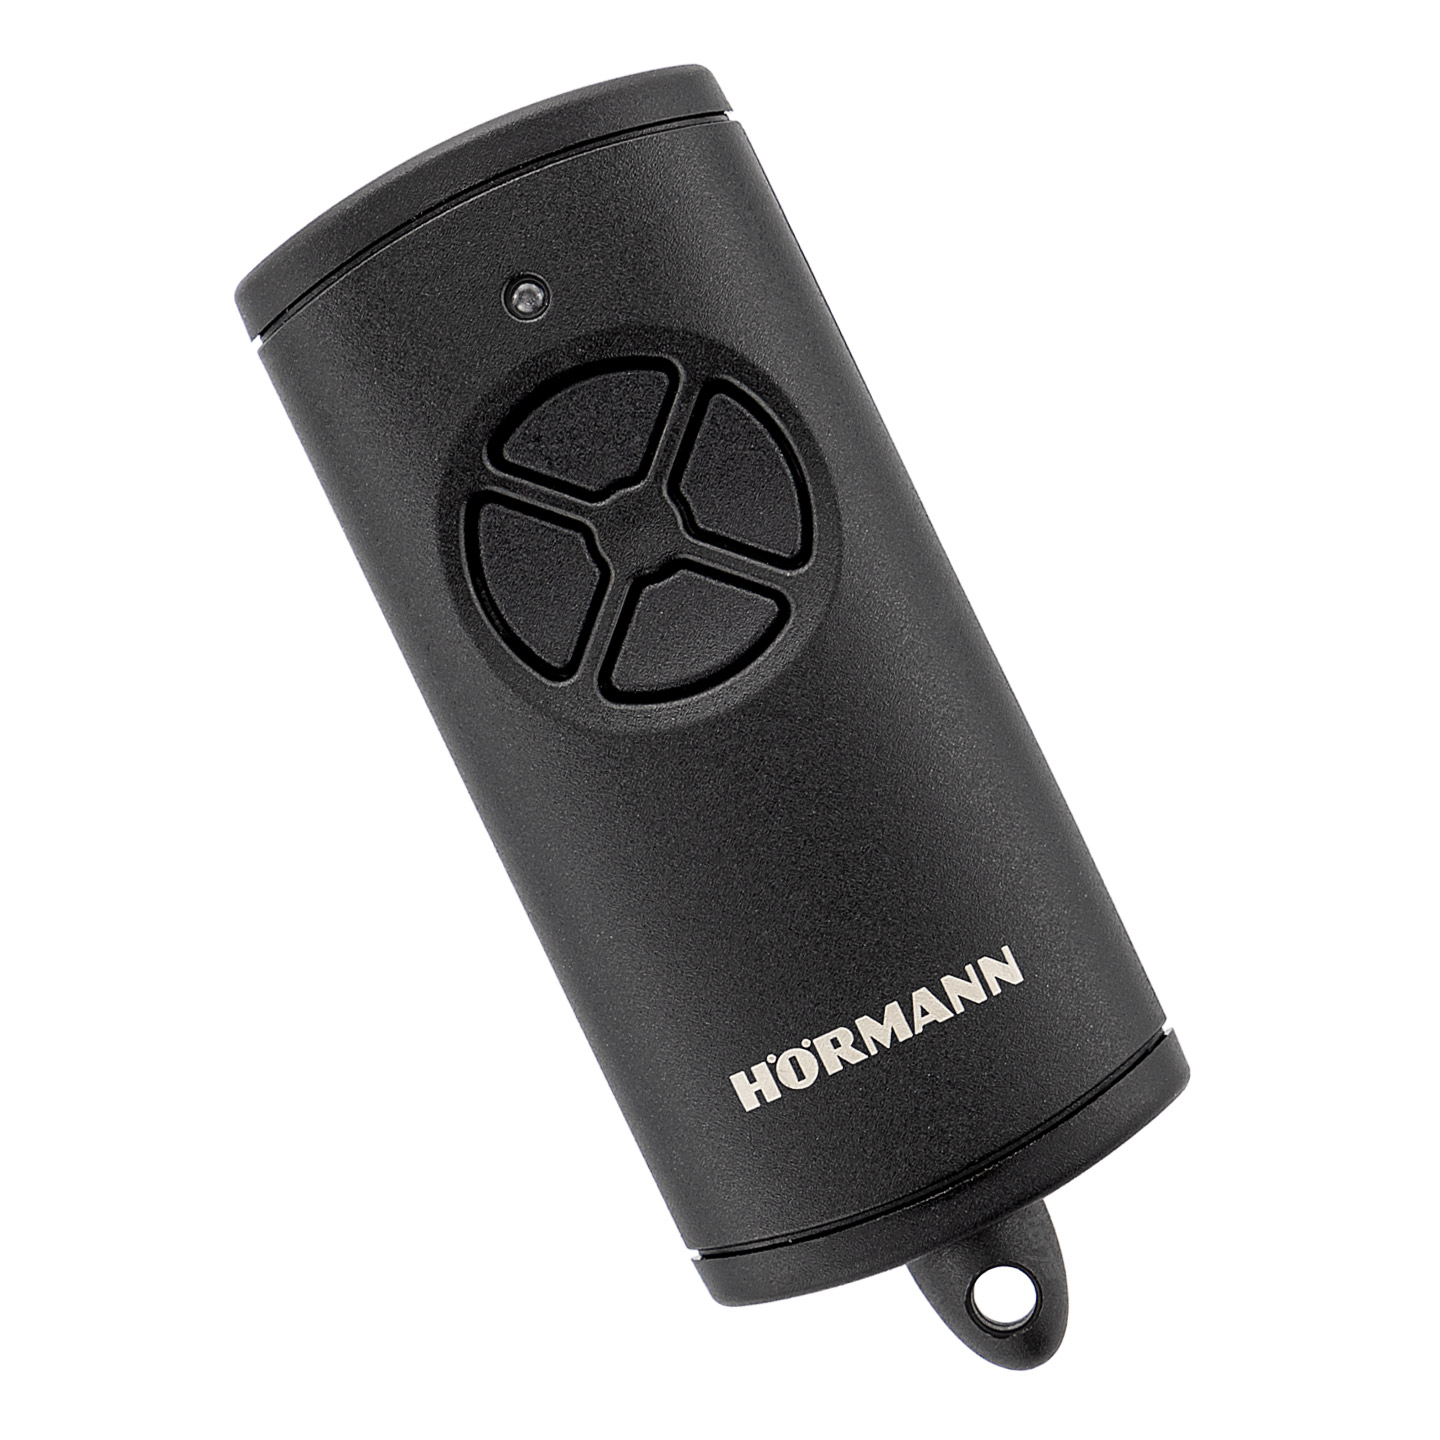 Hörmann Handsender HSE 4 BiSecur, komplett schwarz